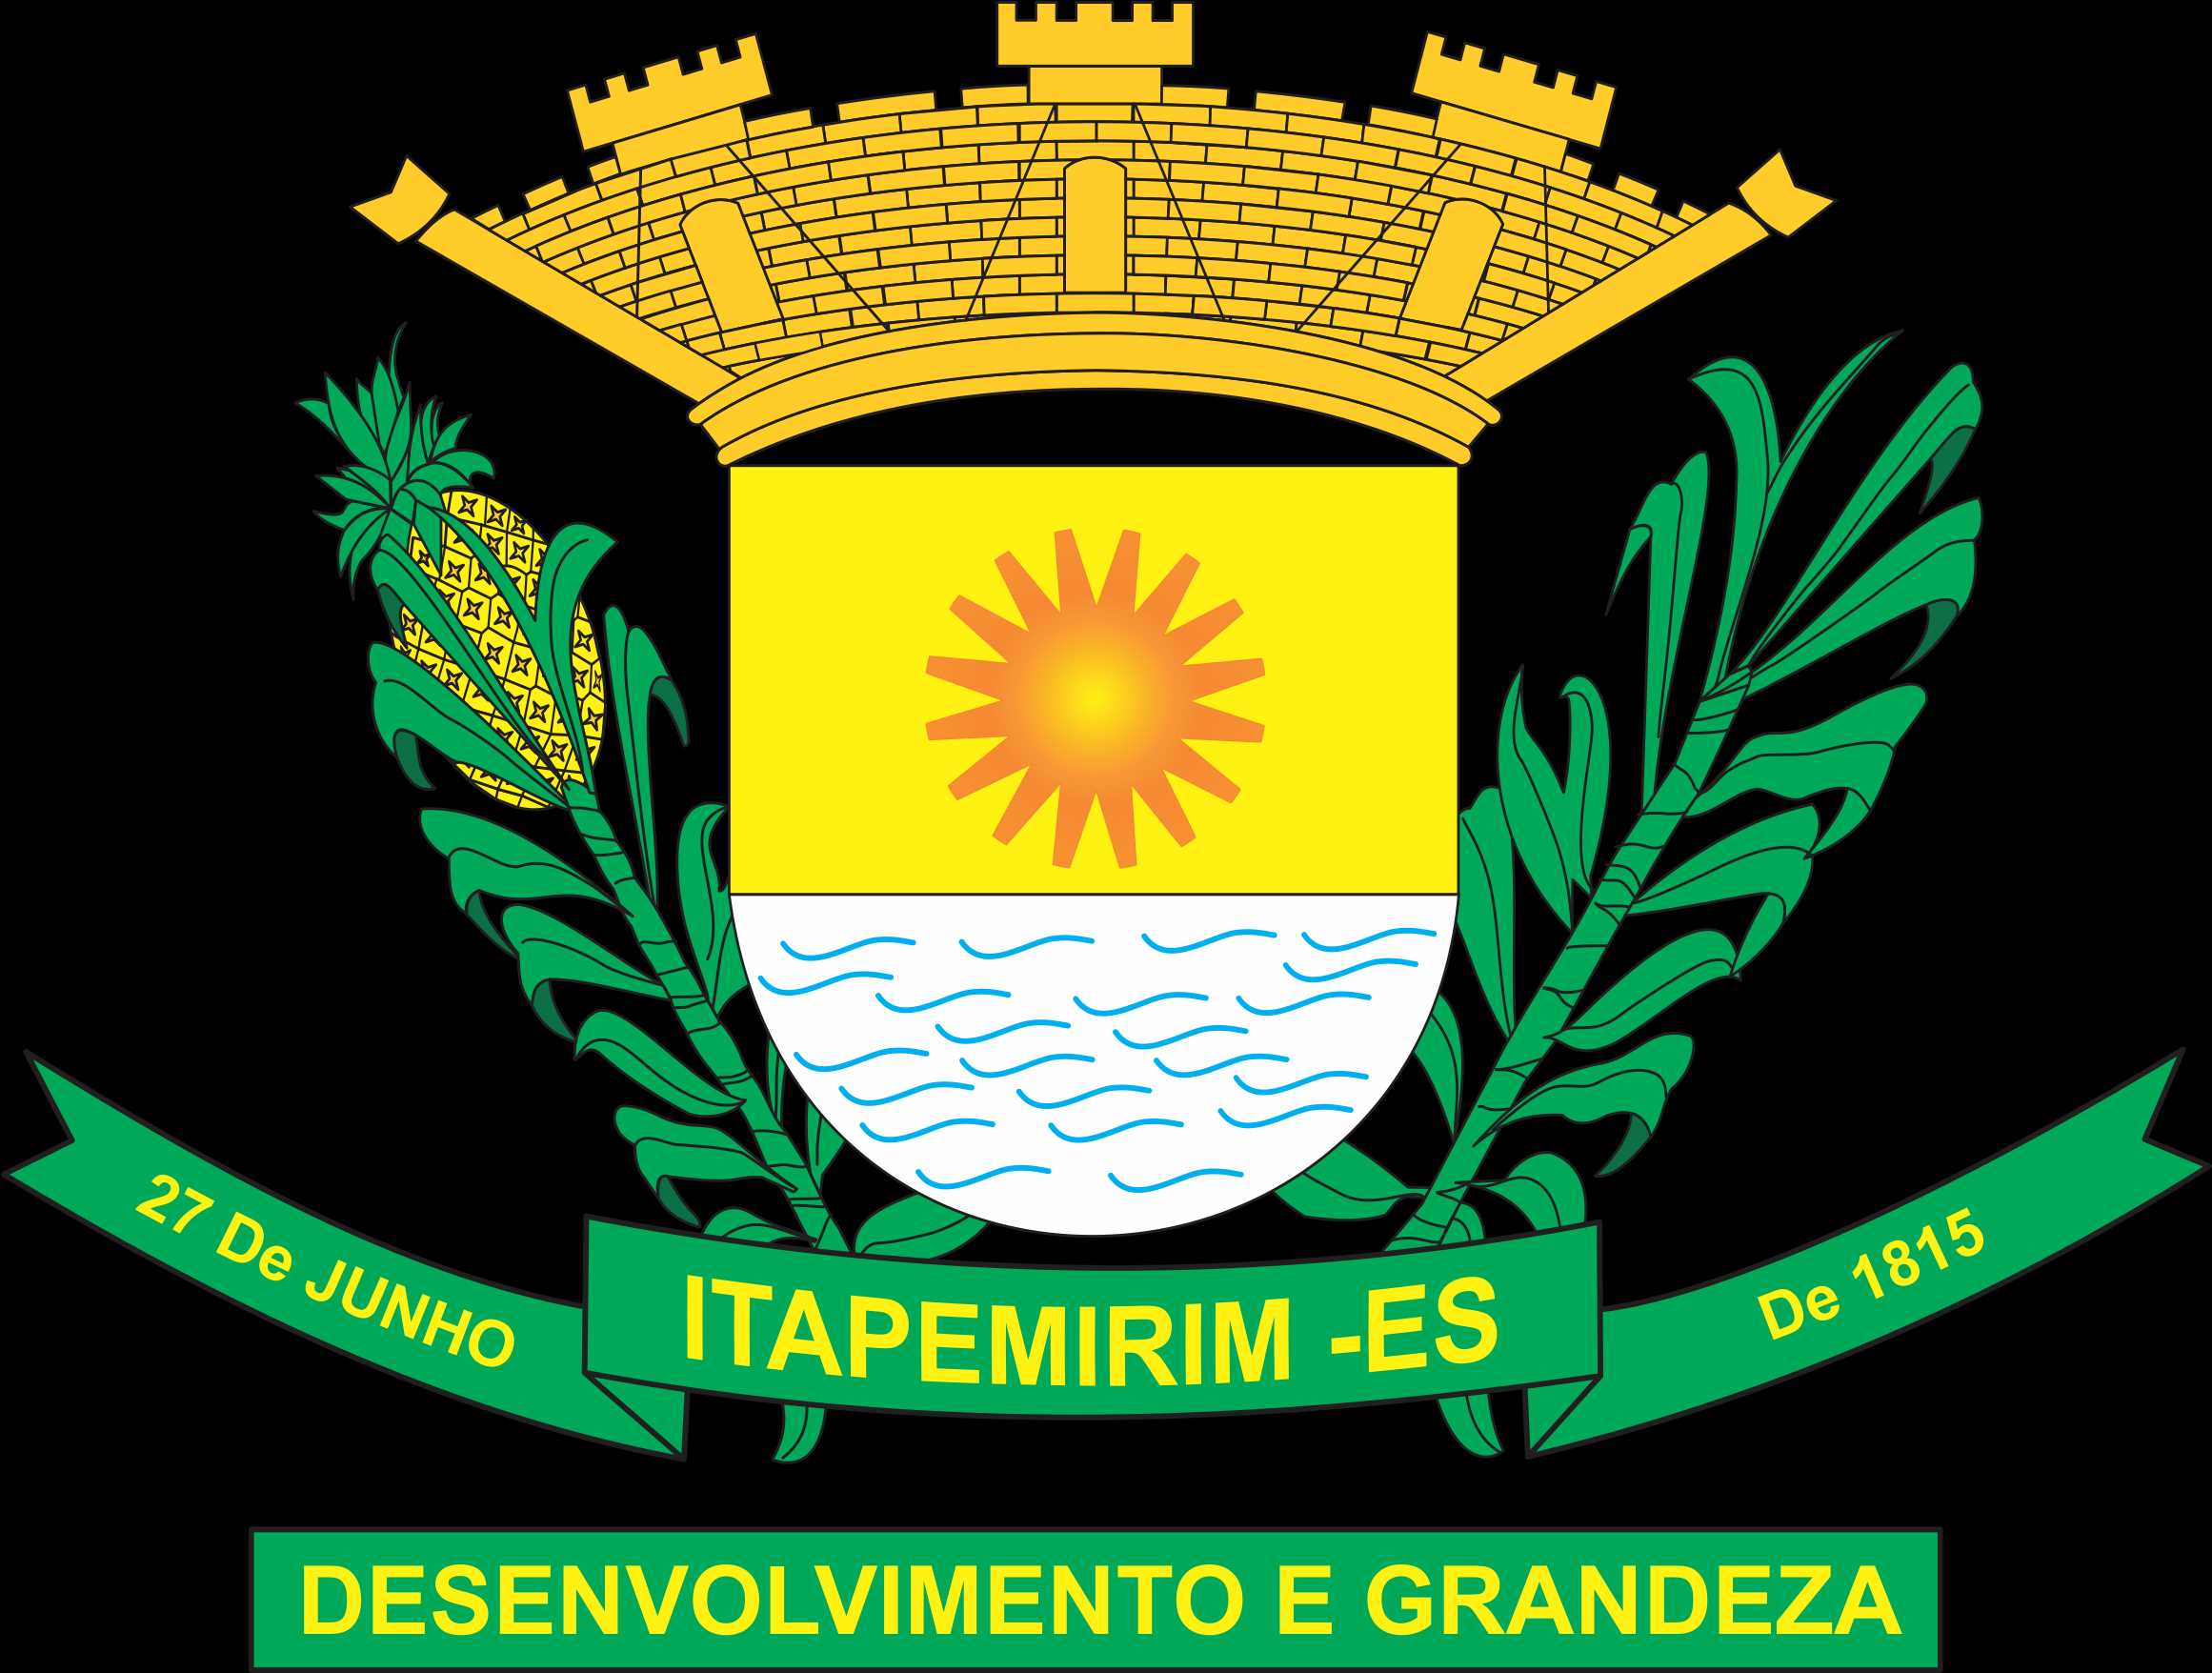 Prefeitura Municipal de Itapemirim - Terceira edição dos Jogos das